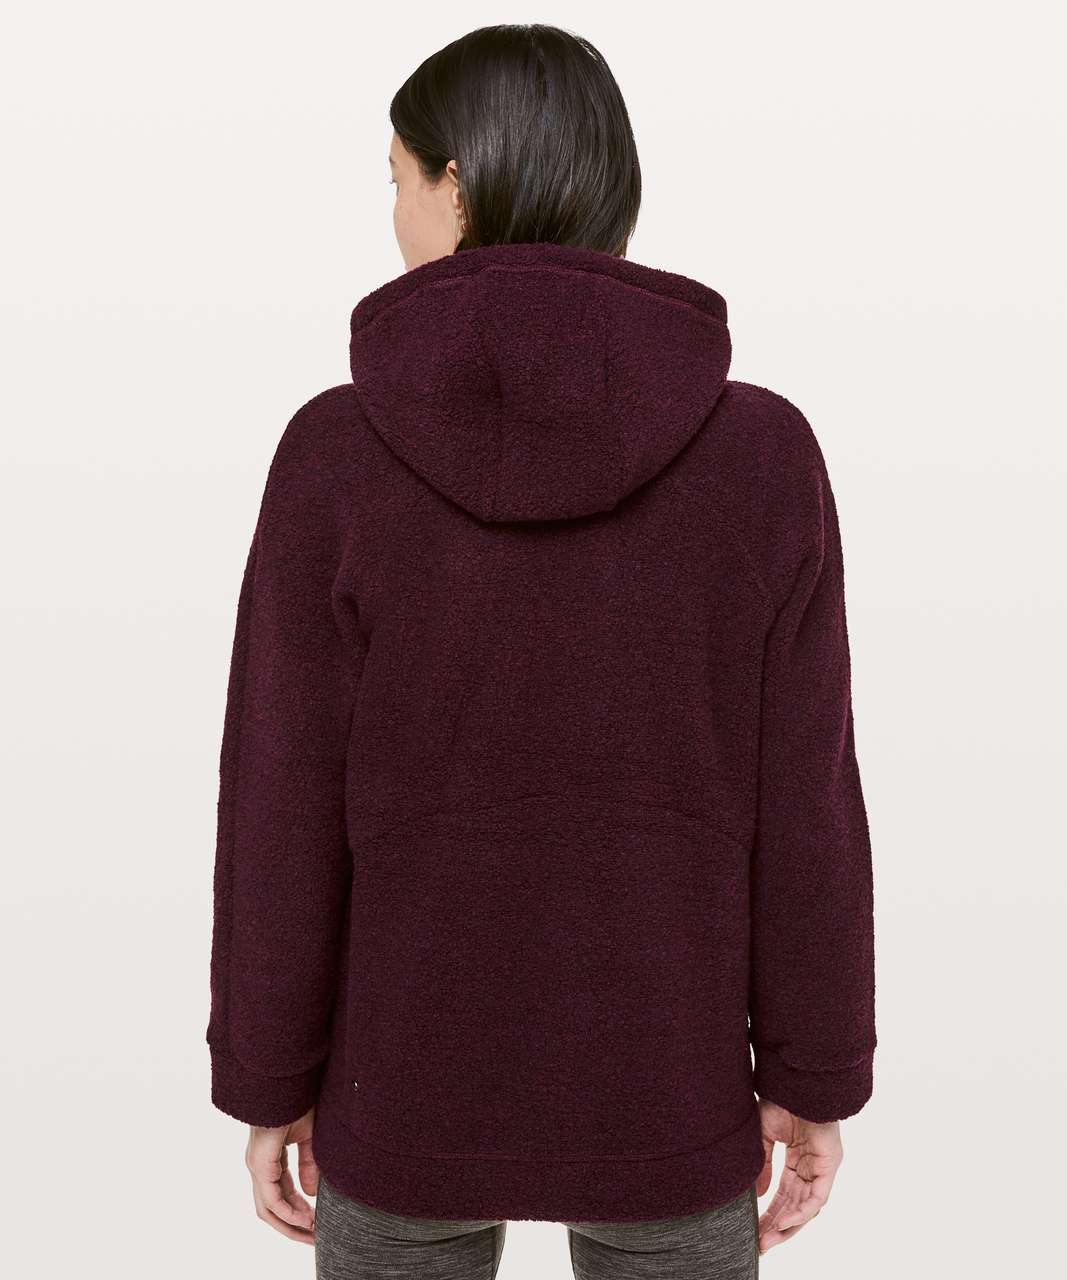 lululemon sherpa hoodie